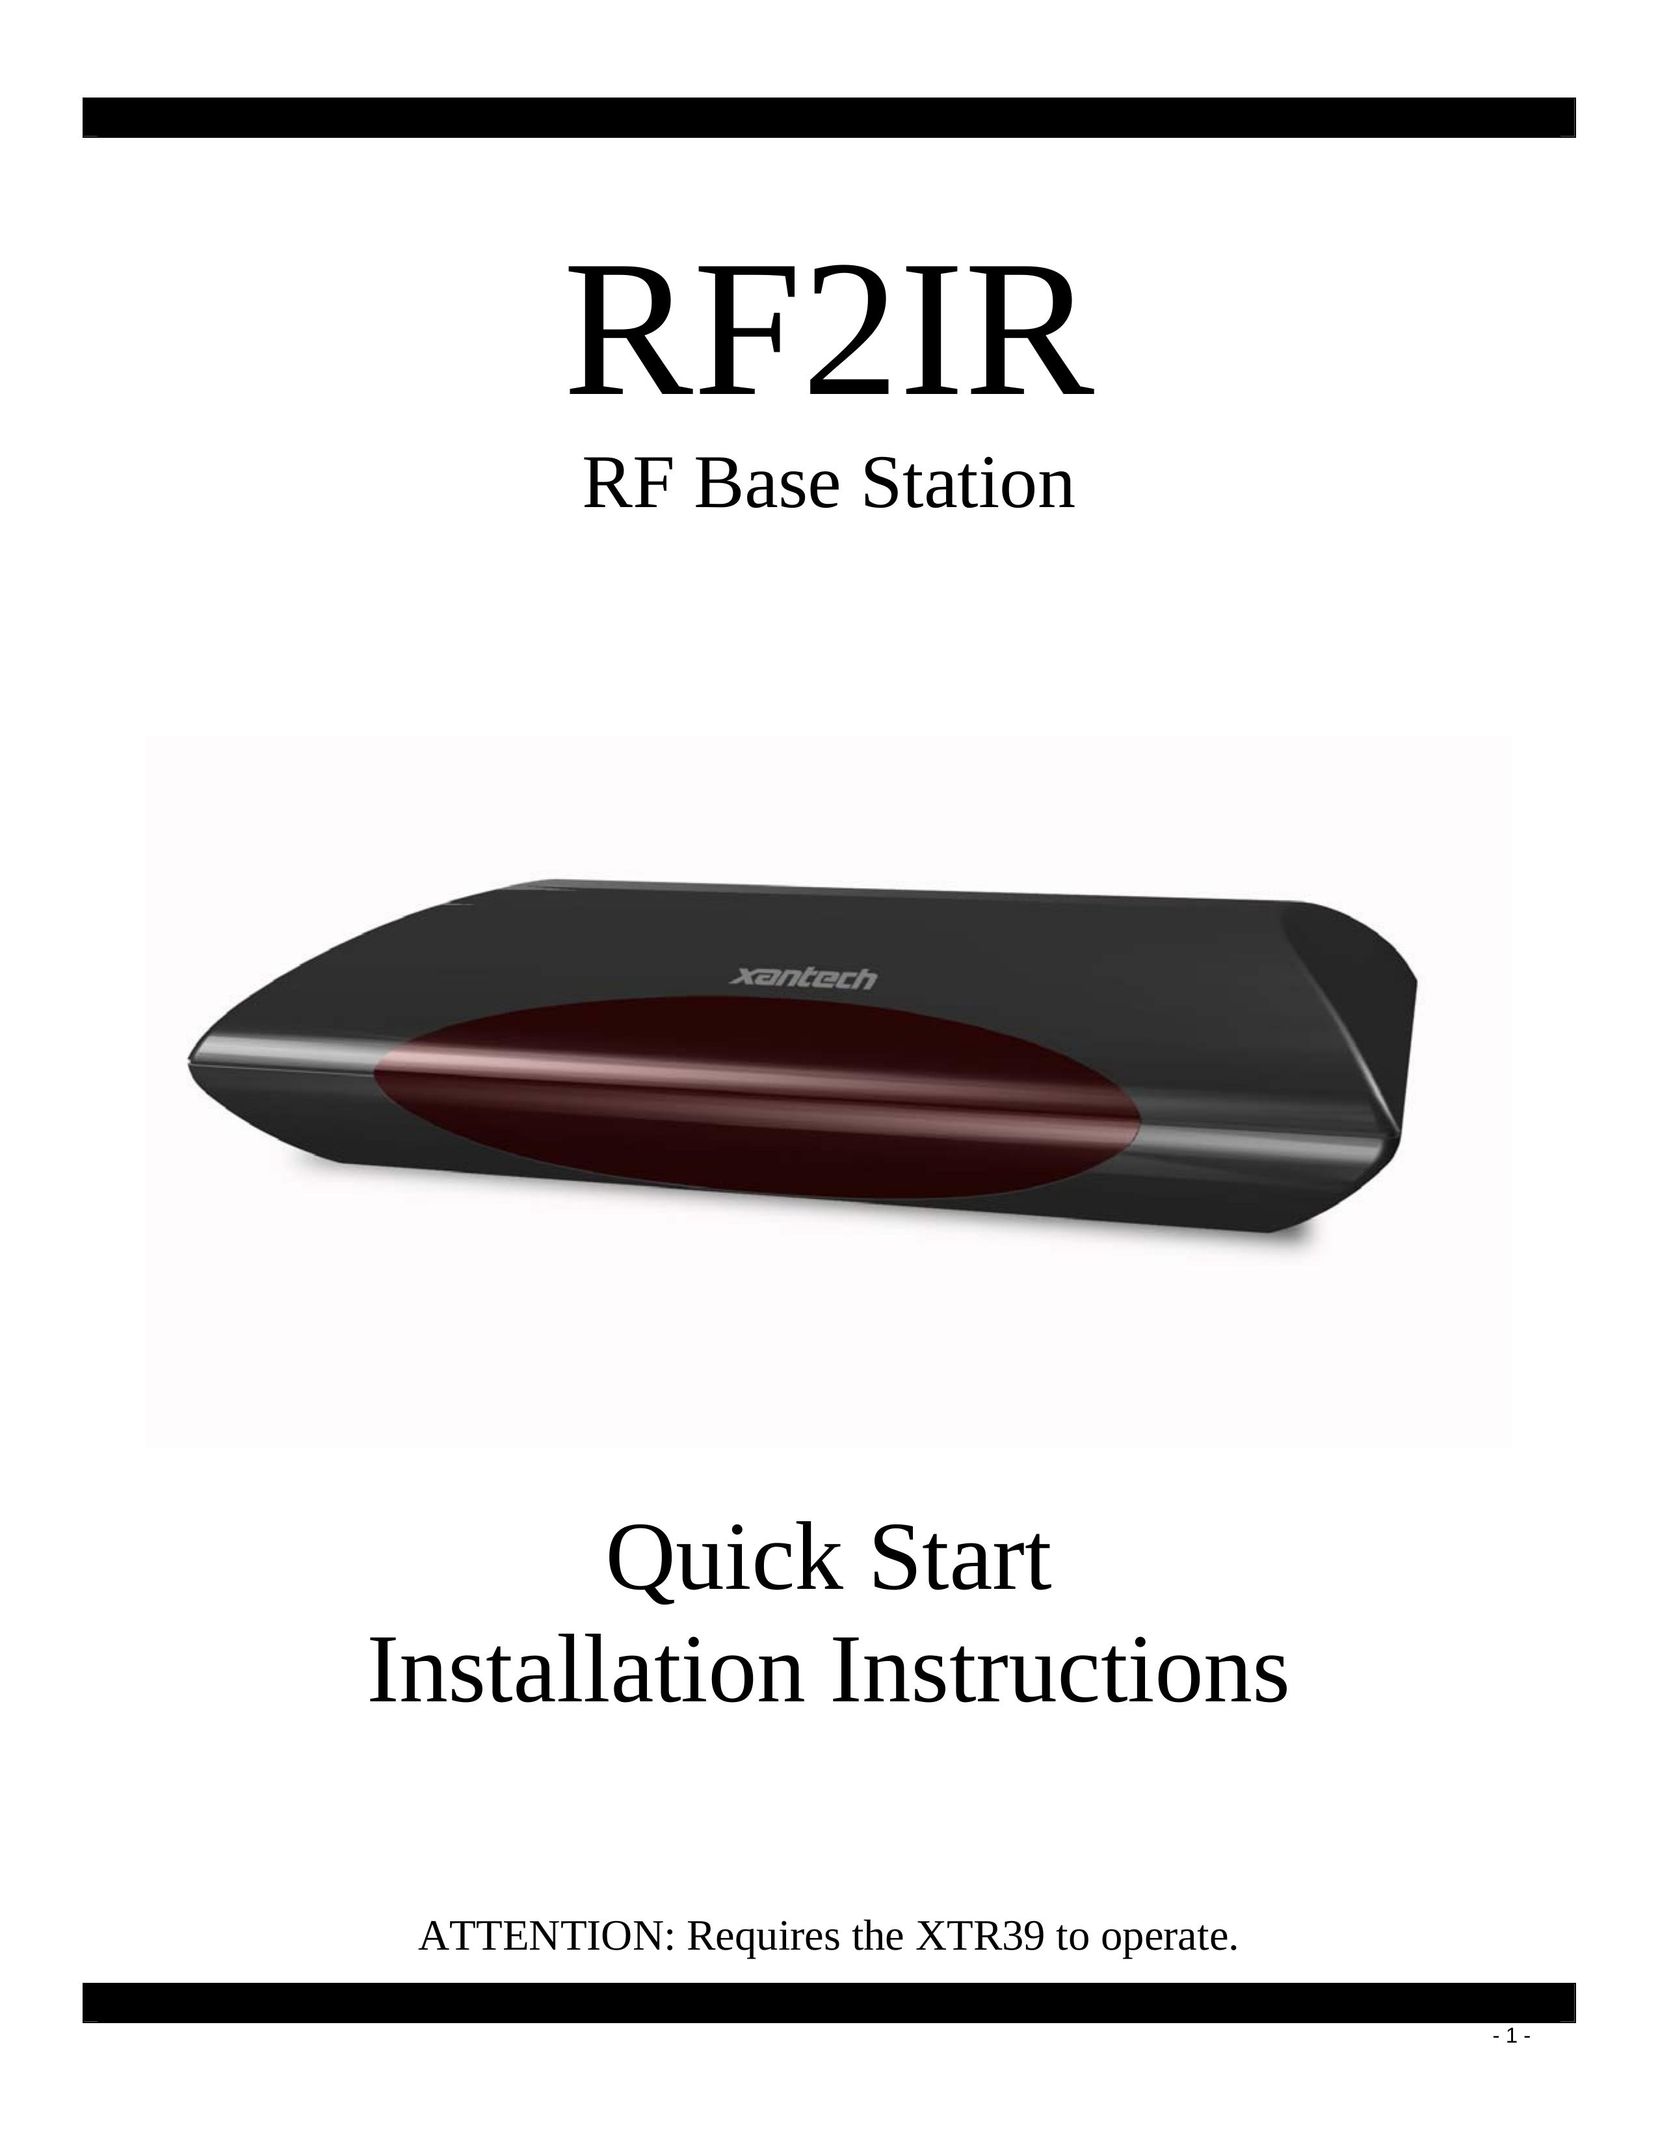 Xantech RF2IR Car Satellite Radio System User Manual